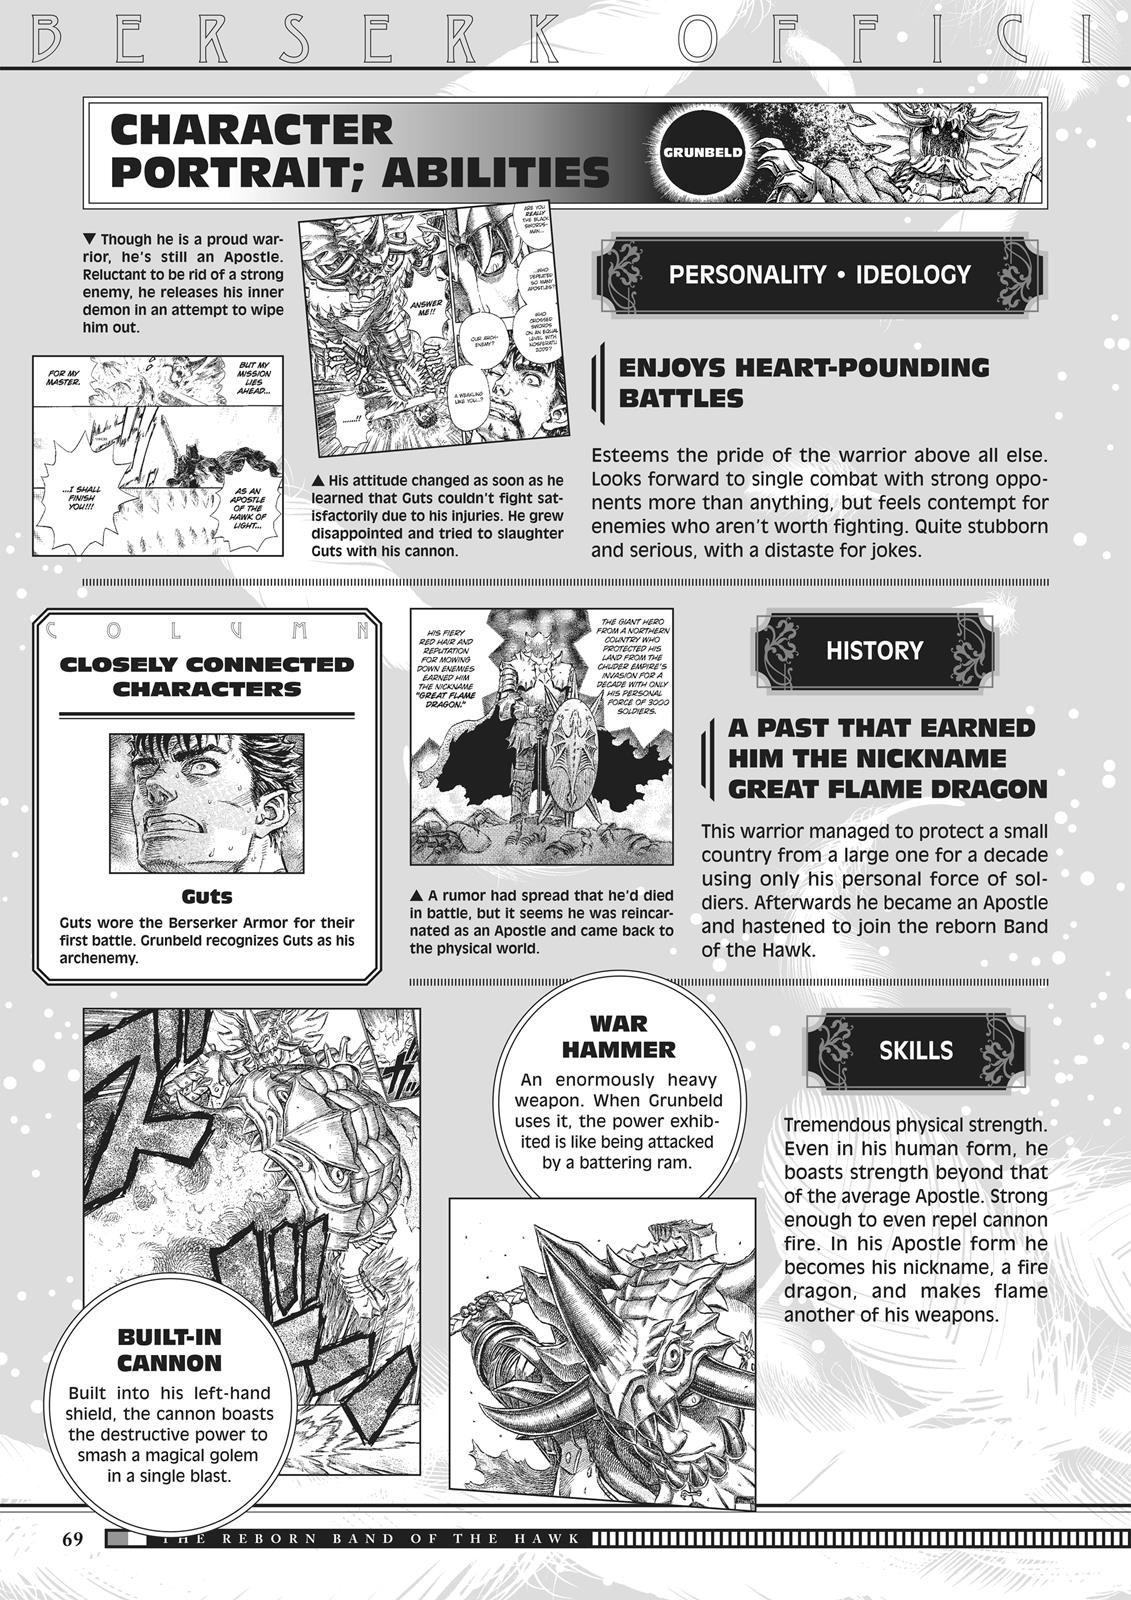 Berserk Manga Chapter 350.5 image 067